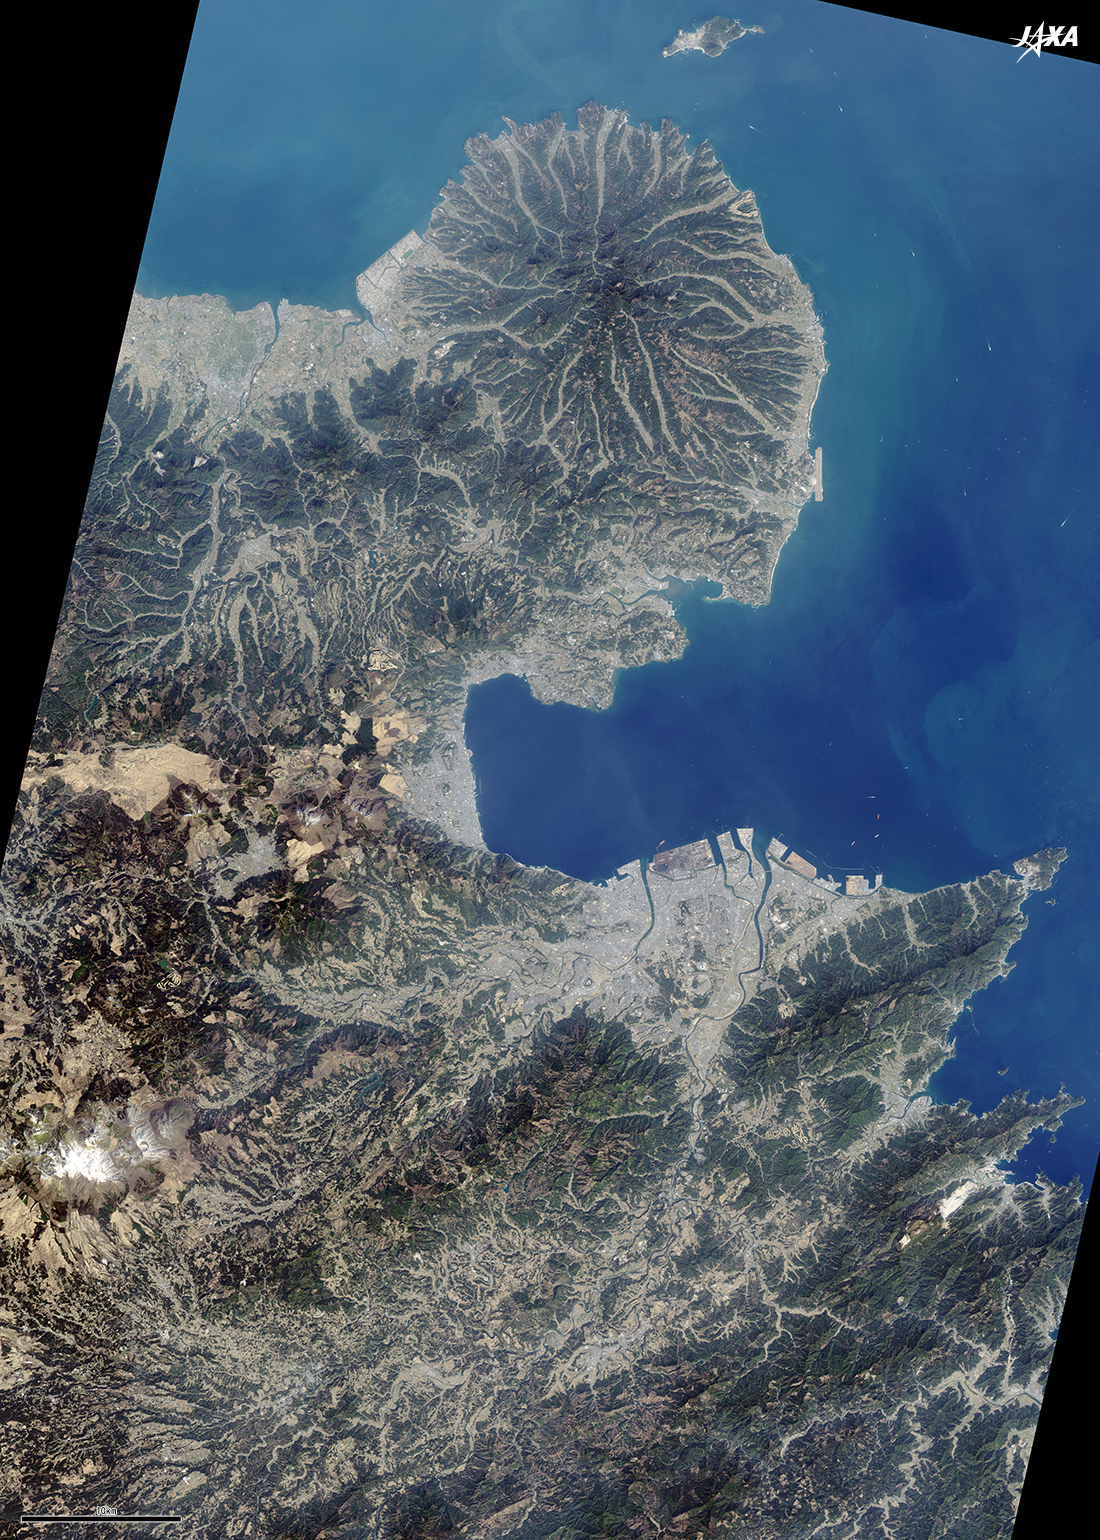 だいちから見た日本の都市 大分県:衛星画像